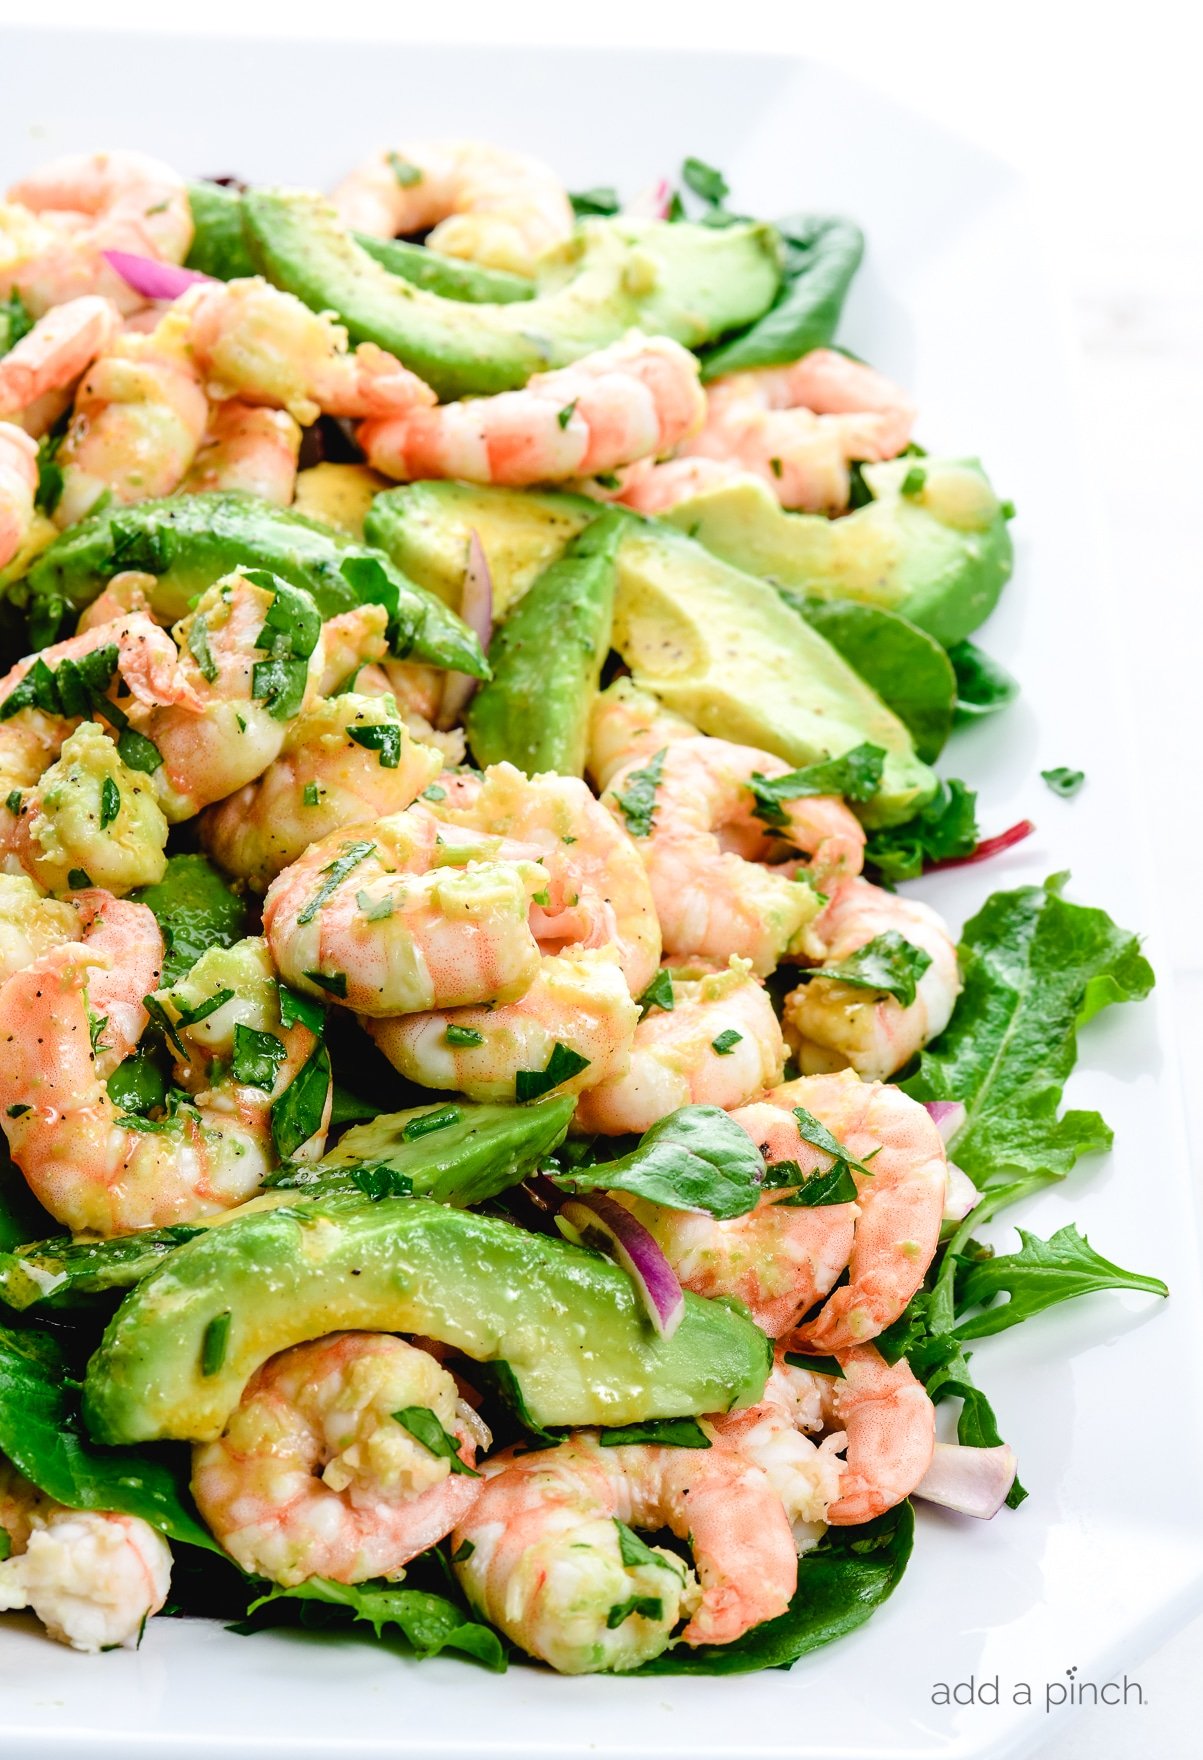 https://addapinch.com/wp-content/uploads/2020/01/citrus-shrimp-avocado-salad-recipe-2992.jpg